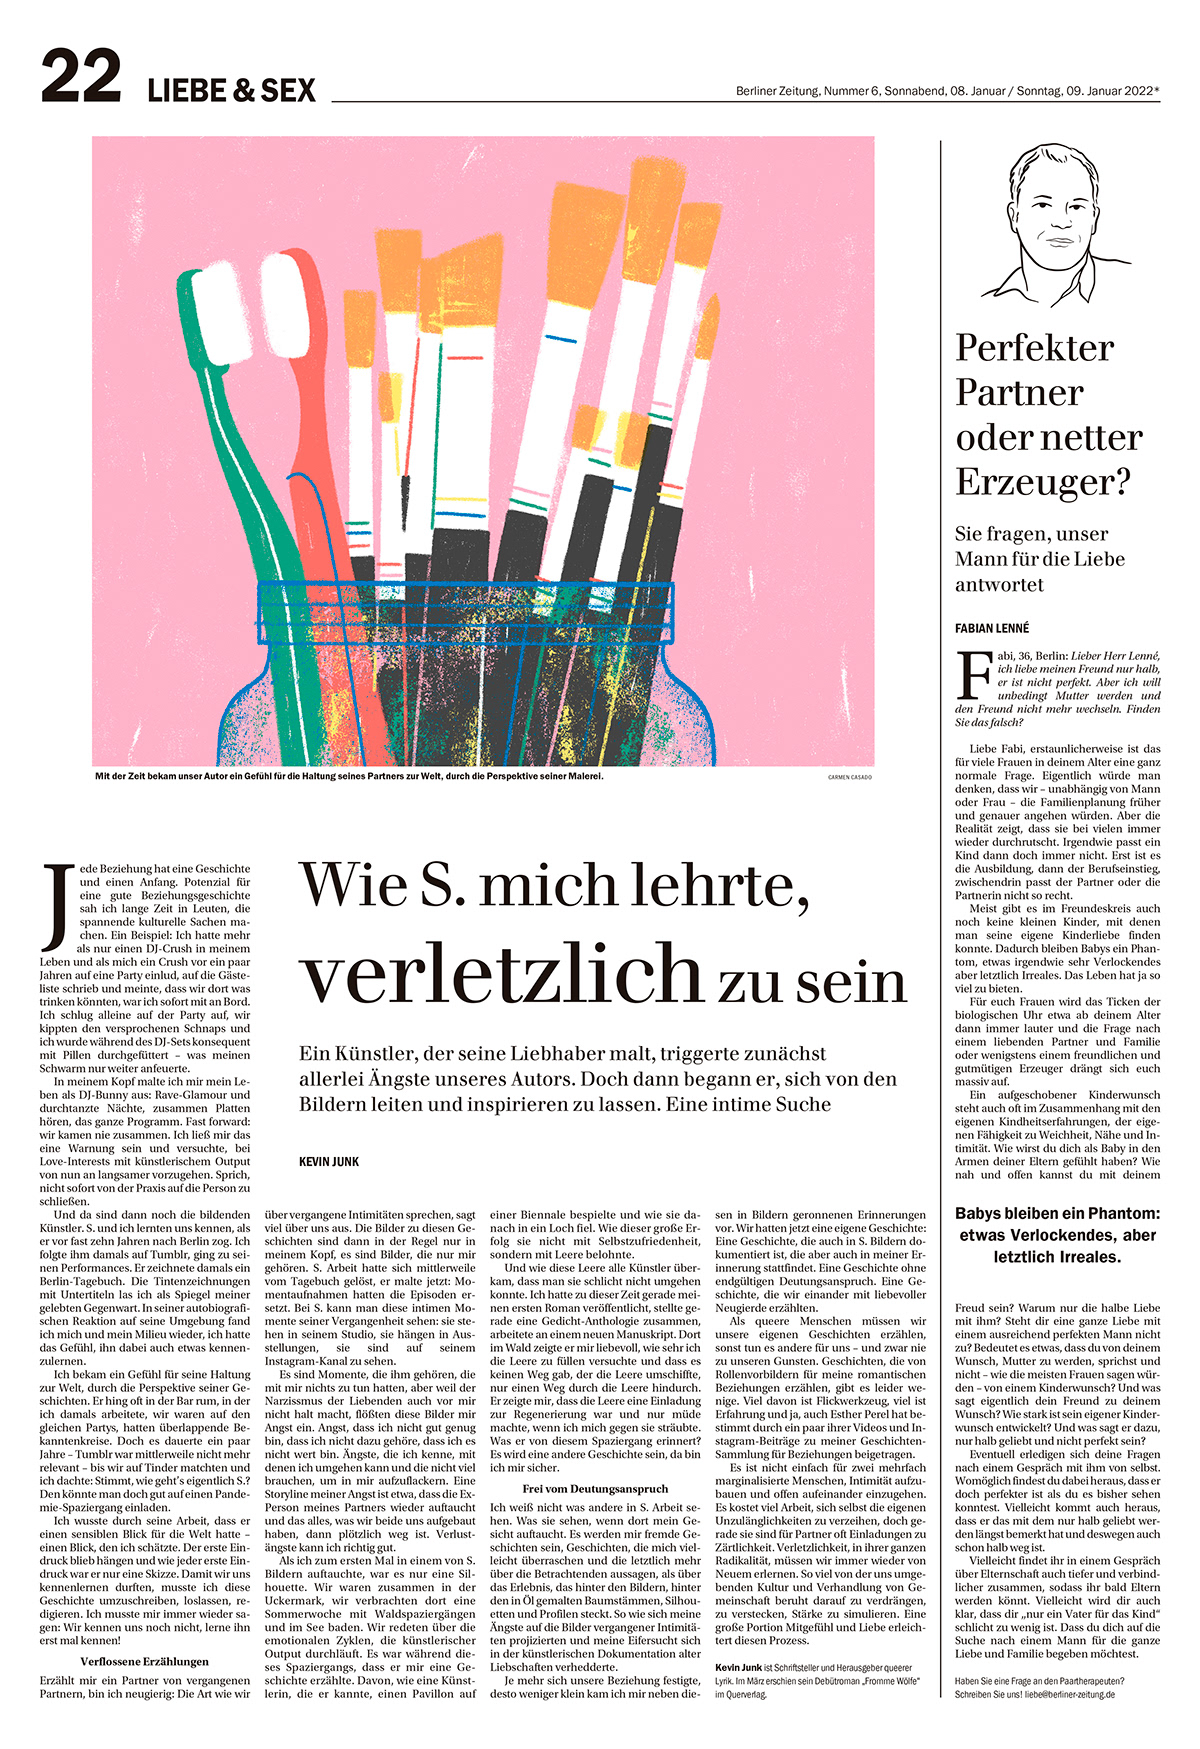 artist Berliner Zeitung Digital Art  Editorial Illustration ILLUSTRATION  Love painter pressillustration relationship toothbrush